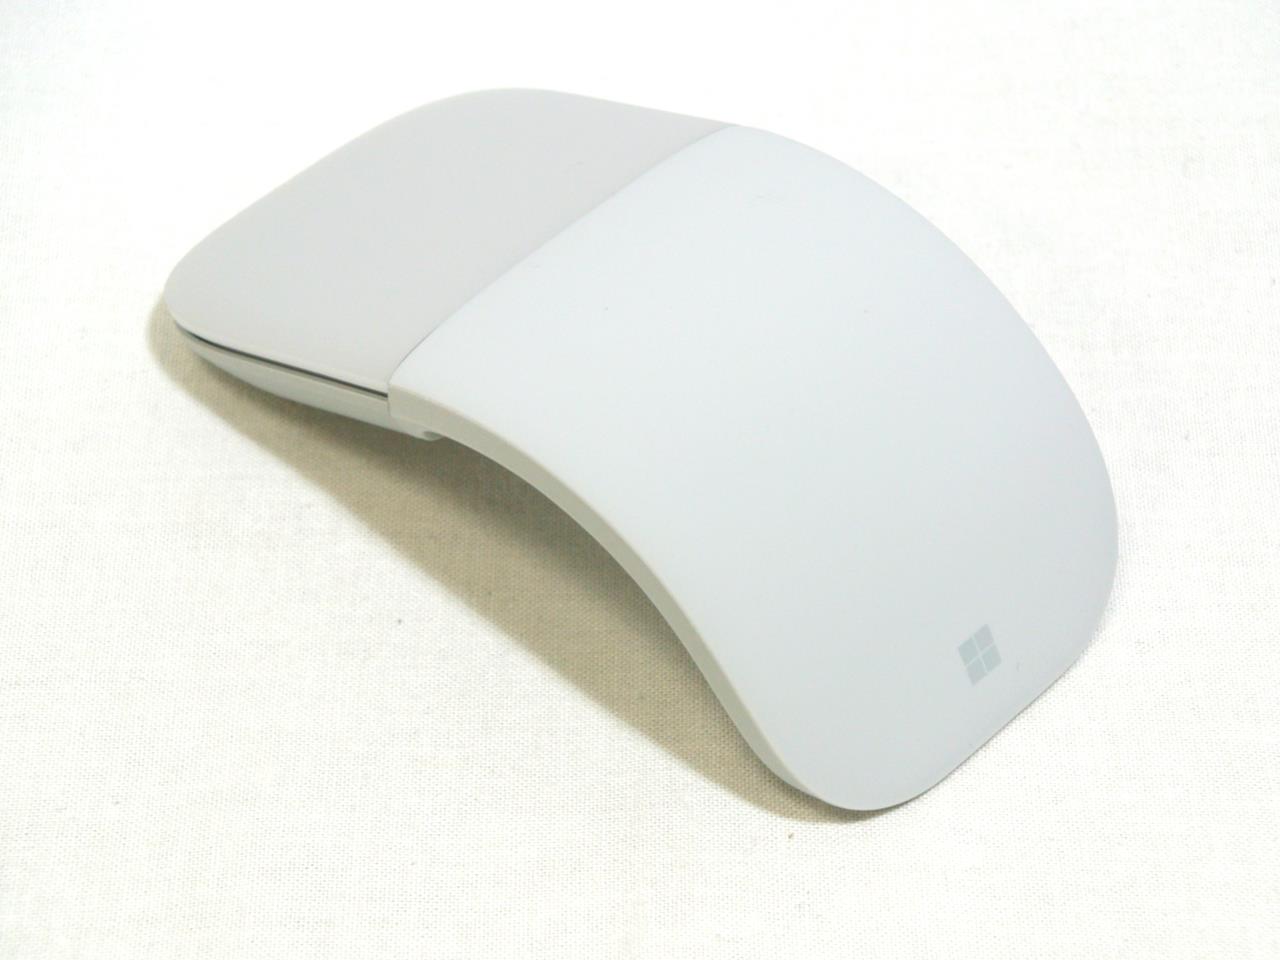 マイクロソフト CZV-00007 Microsoft Surface Arc Mouse グレー ワイヤレスマウス